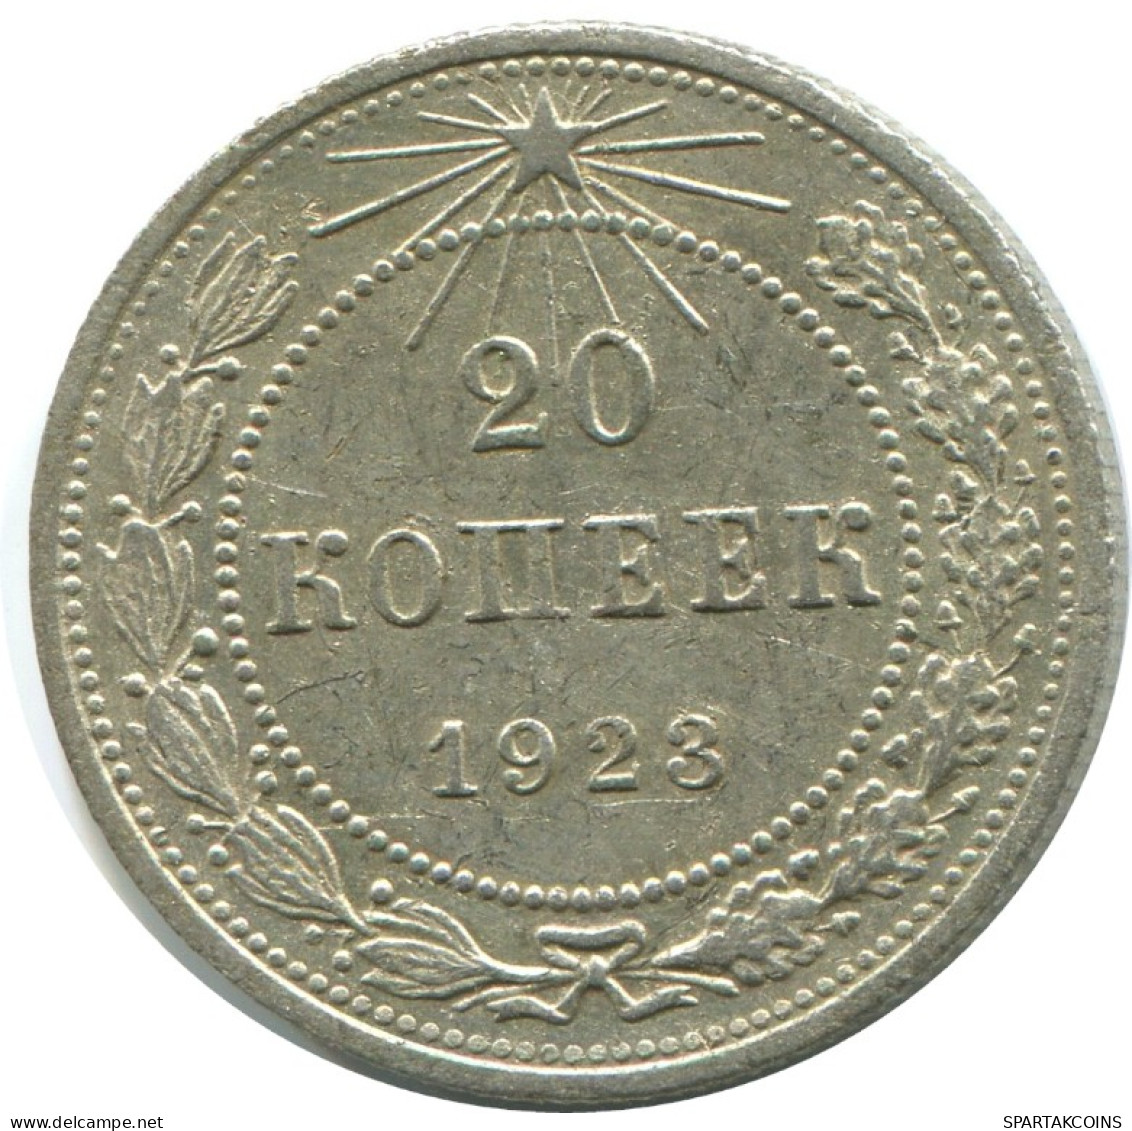 20 KOPEKS 1923 RUSSLAND RUSSIA RSFSR SILBER Münze HIGH GRADE #AF480.4.D.A - Russia